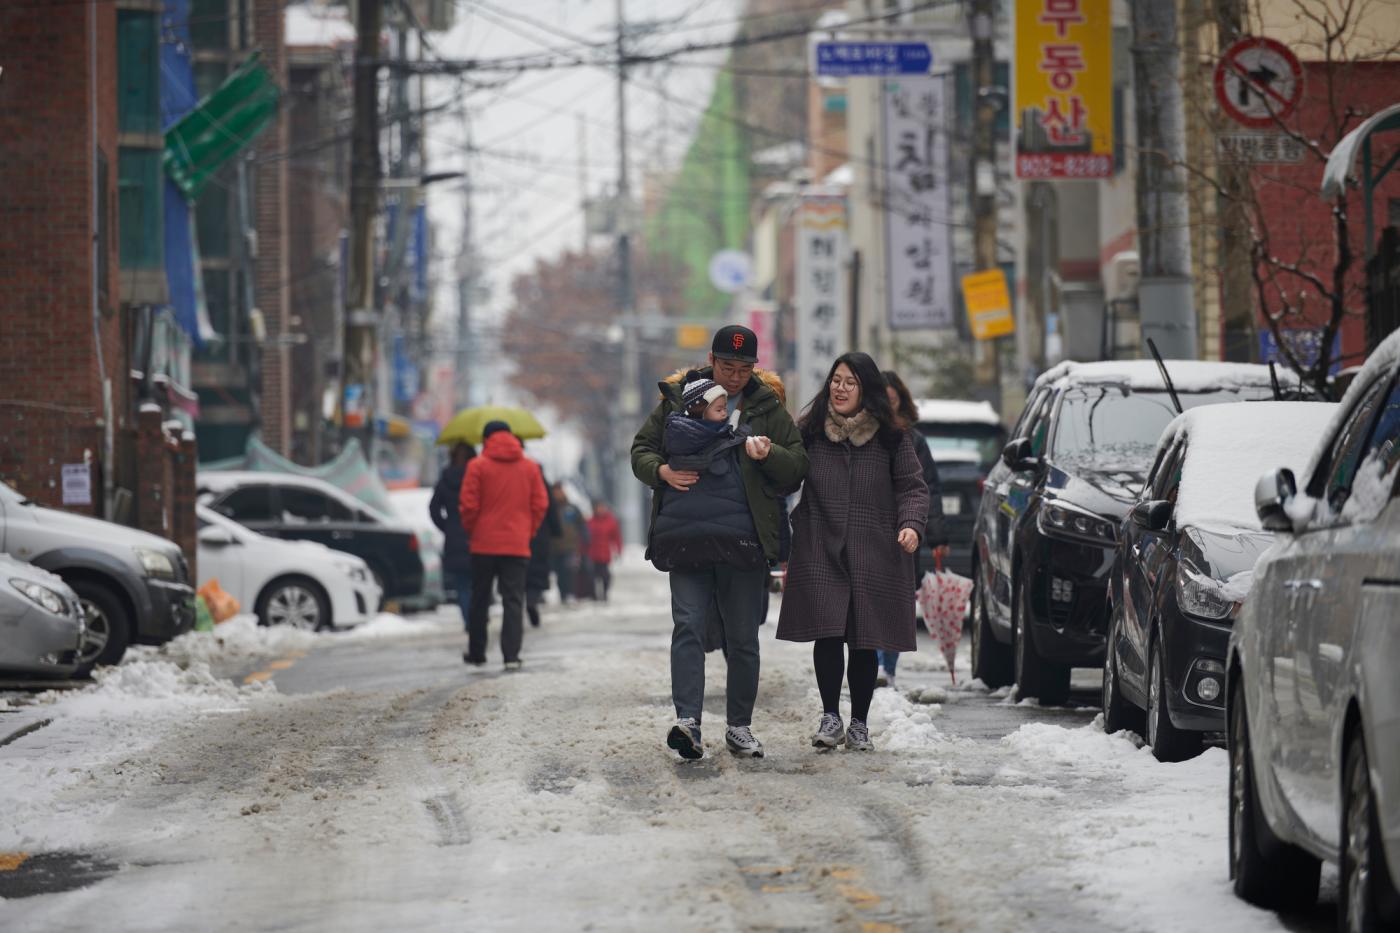 Seoul street in a winter